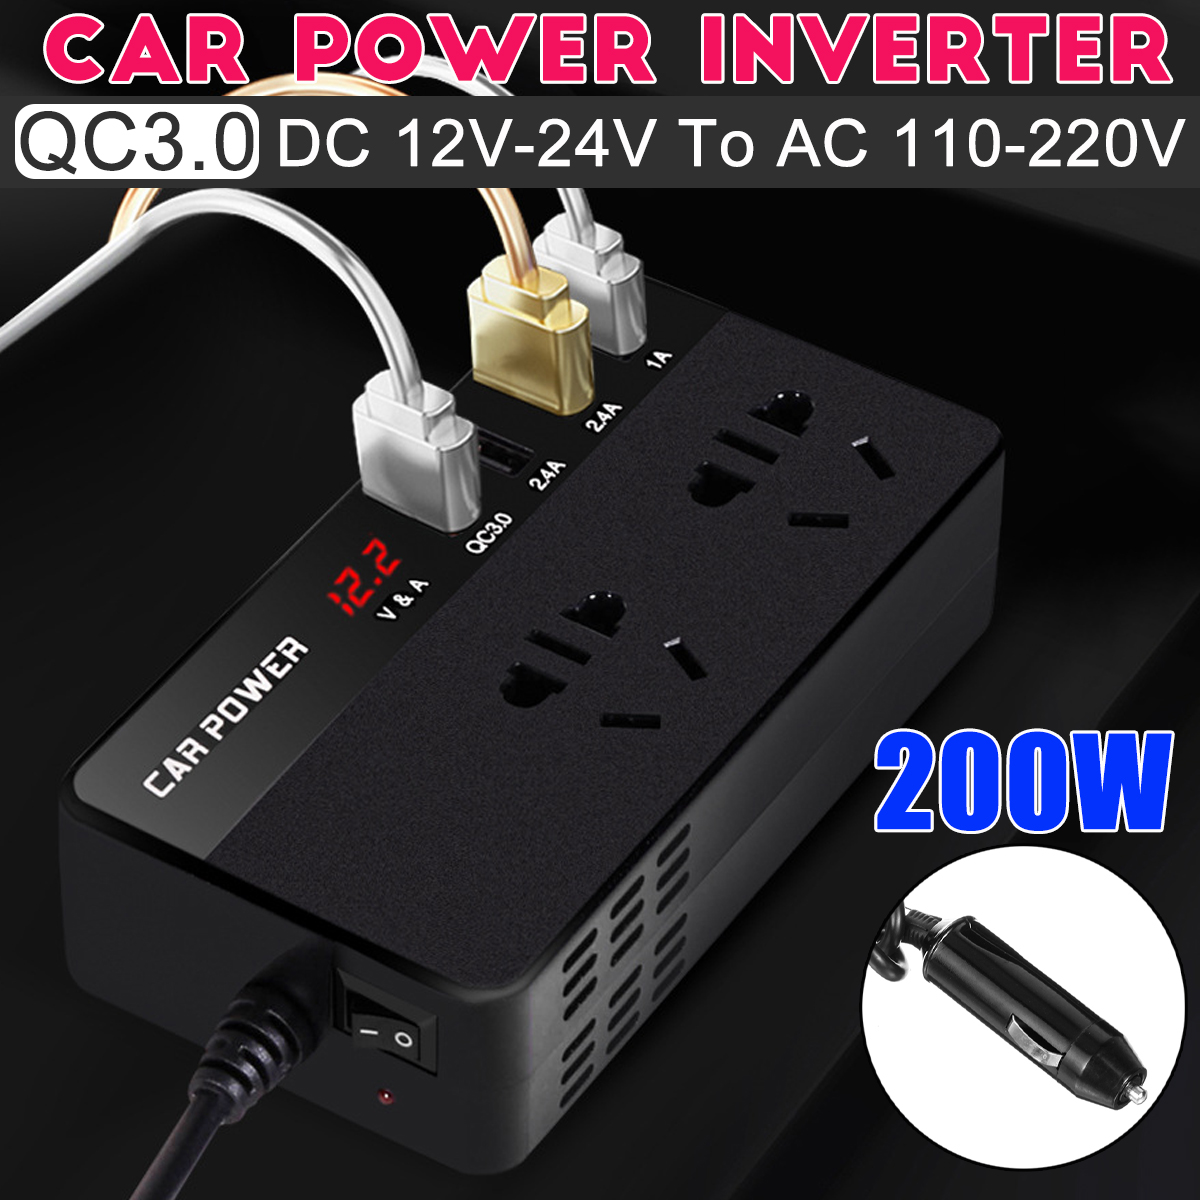 1224V-to-110220V-200W-Car-Power-Inverter-Car-Reverse-Power-Charger-Universal-Multi-function-Inverter-1919645-3